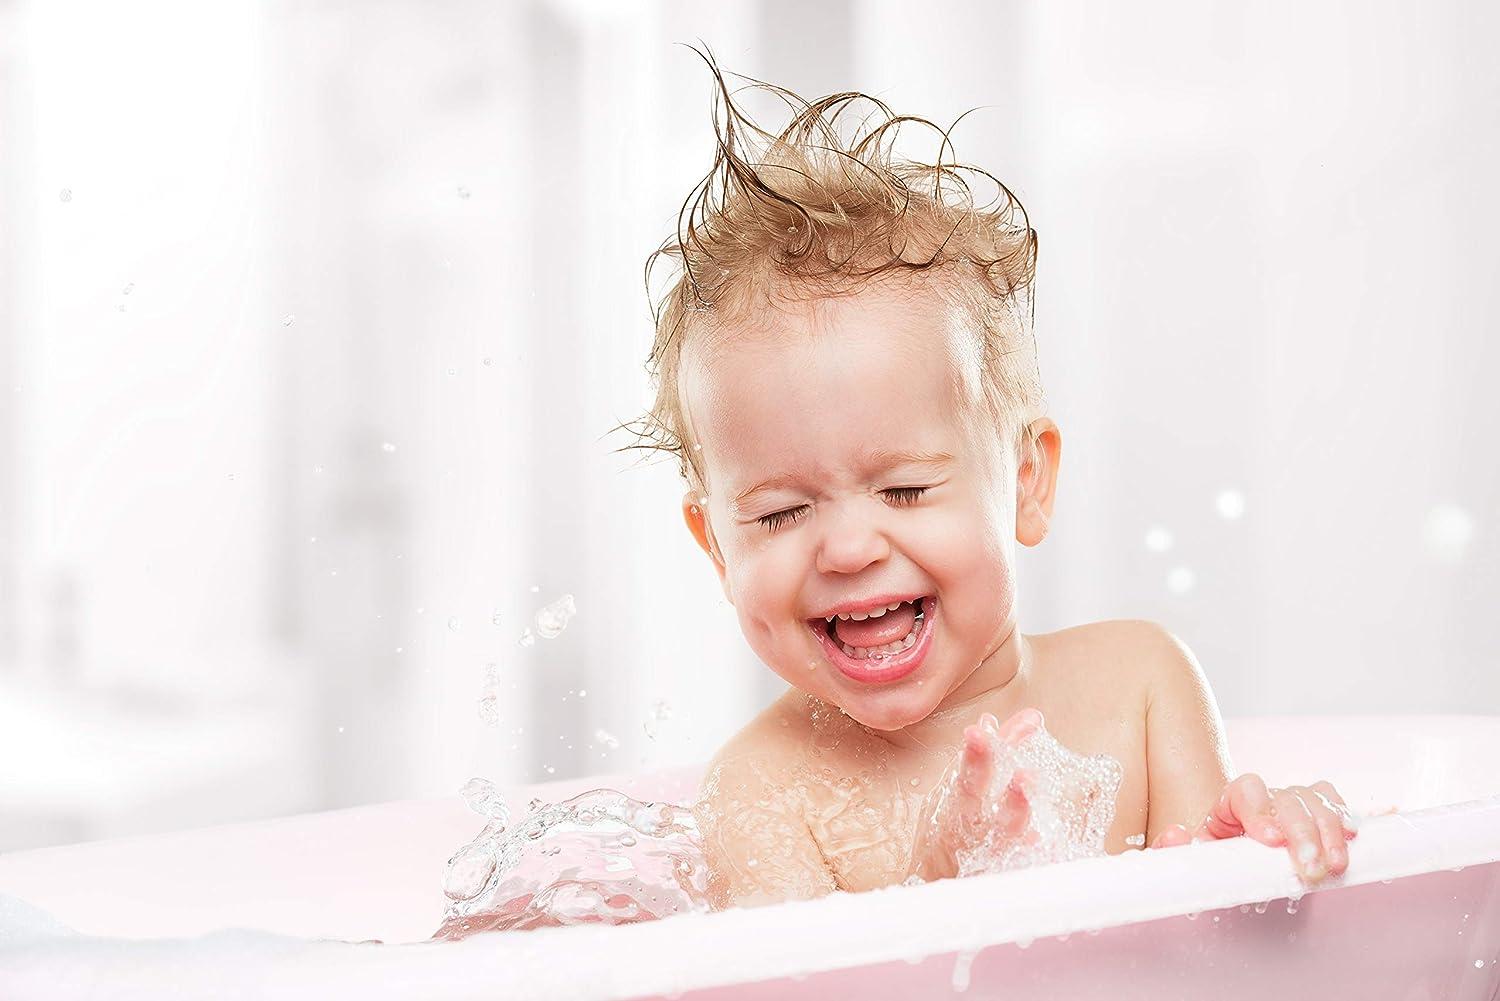  Moneysworth & Best Fun House Kids Foam Soap Green Apple Foam  Soap, 8.2 fl. oz, 1 Pack : Beauty & Personal Care